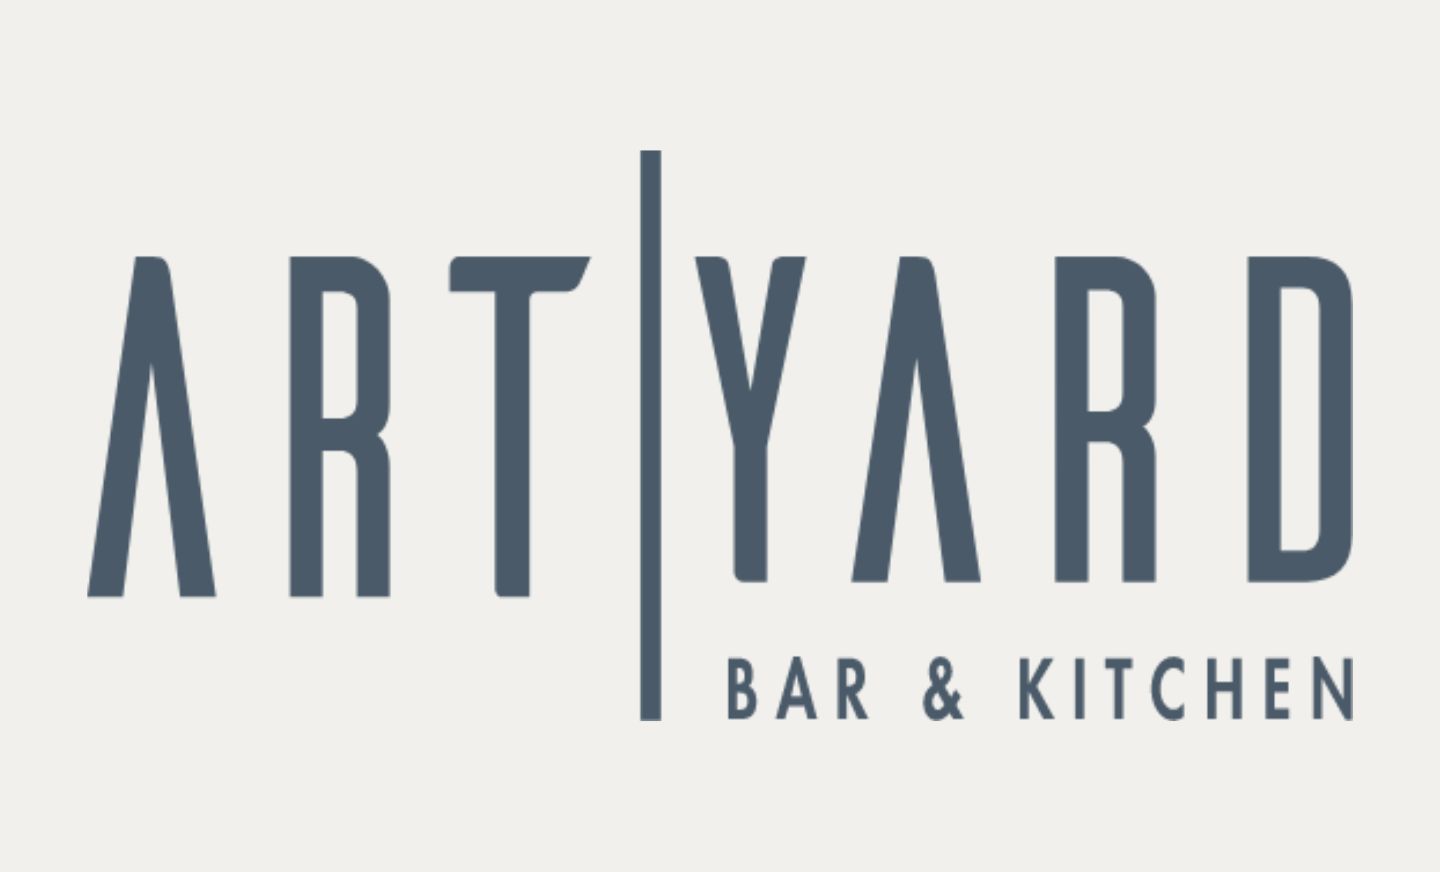 Art Yard Bar & Kitchen